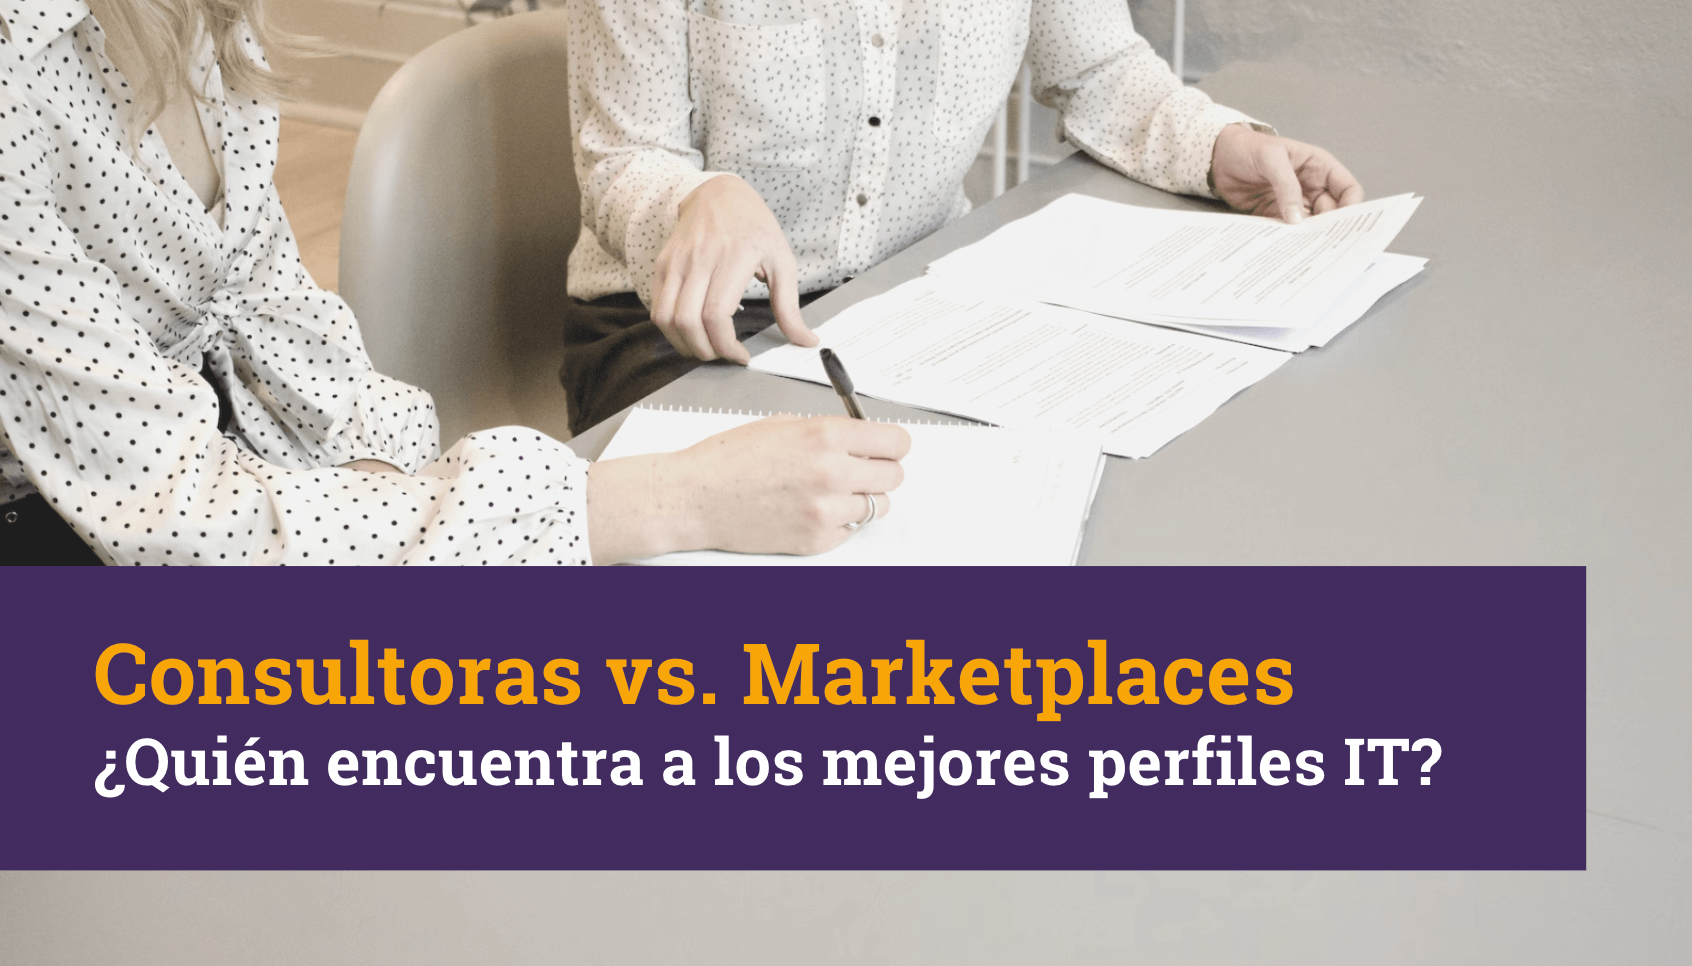 Consultoras vs. Marketplaces ¿Quién encuentra perfiles IT? - TalentFY